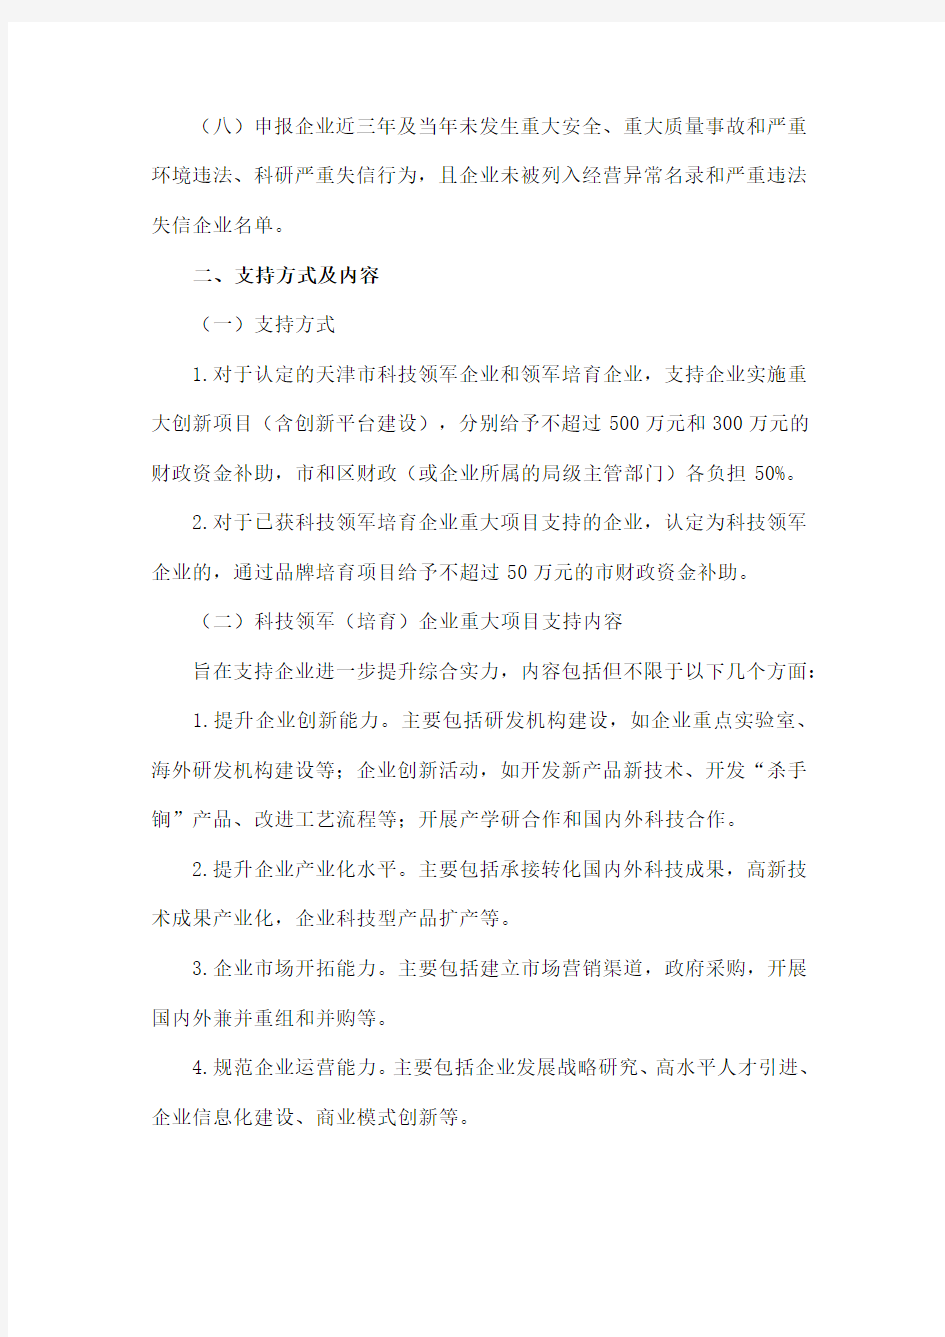 2020年天津市科技领军(培育)企业认定及支持项目